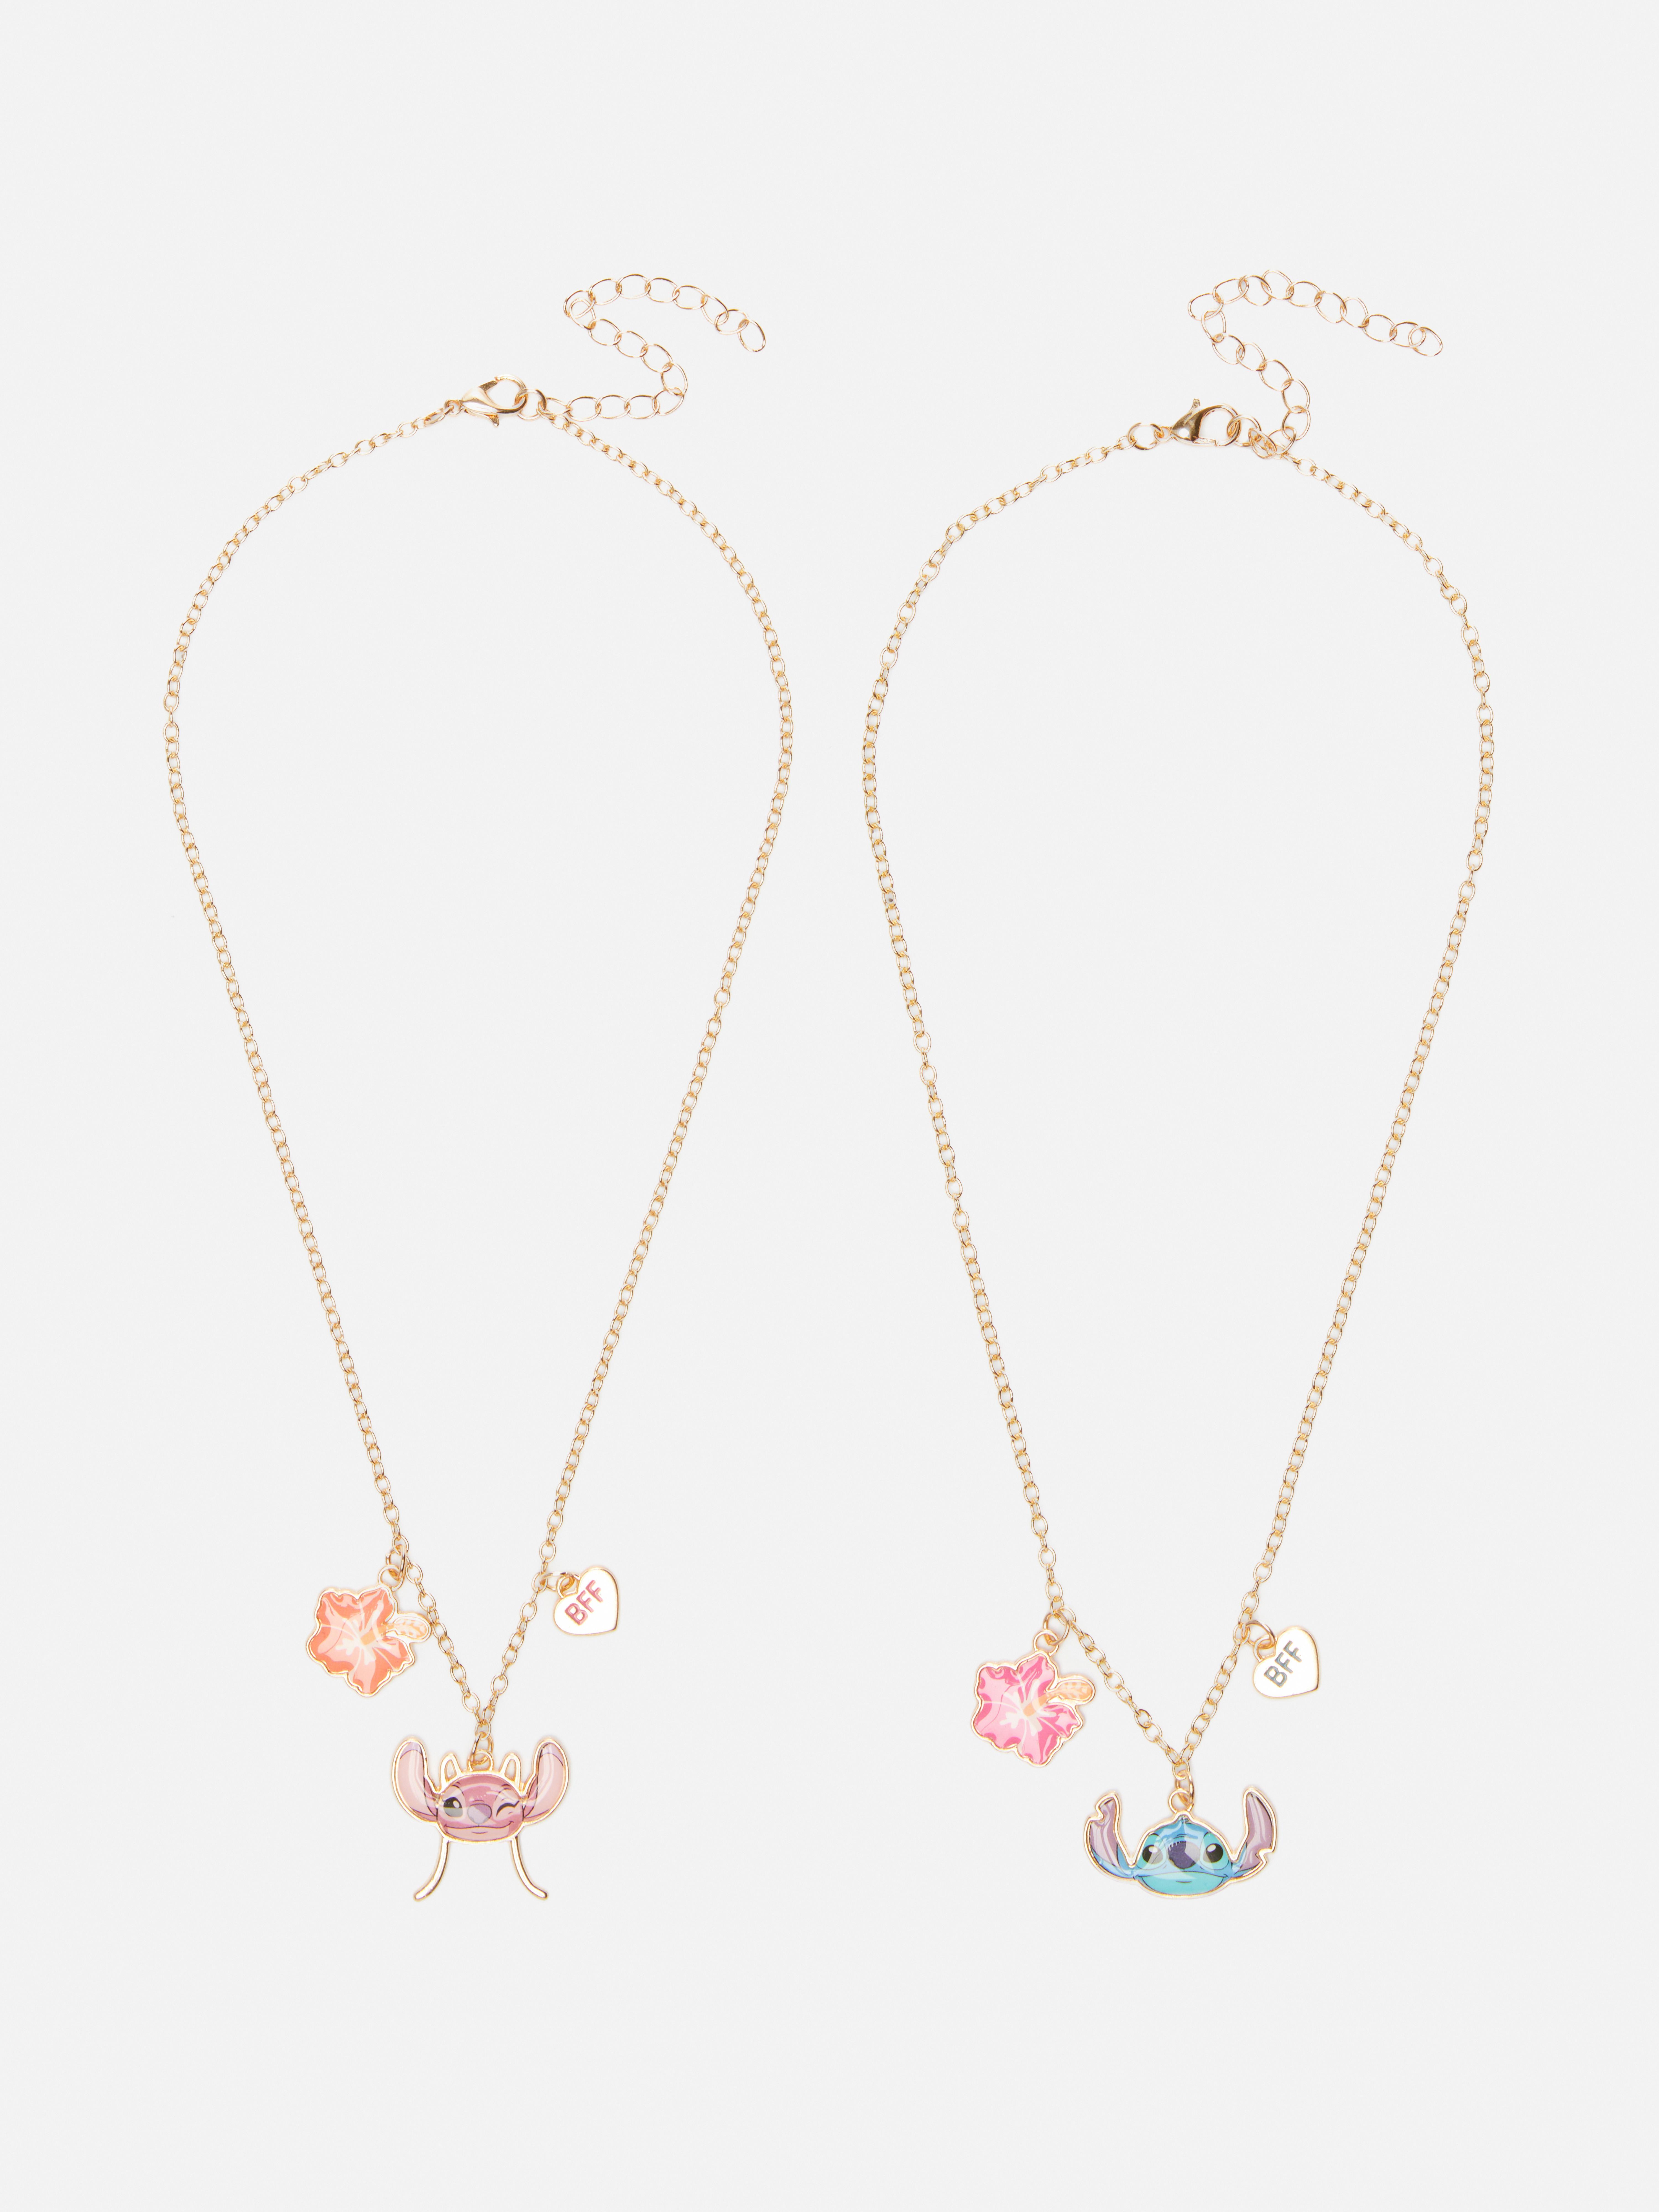 Two-Piece Disney's Lilo & Stitch Friendship Necklaces